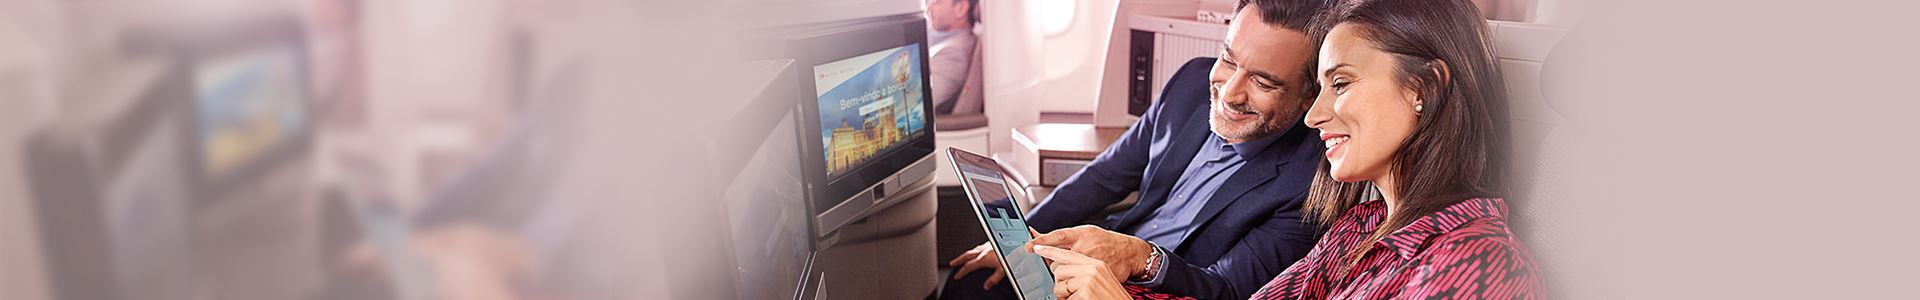 Primer plano de una mujer y un hombre sonrientes y sentados a bordo de un avión. La mujer sostiene una tableta y el hombre la mira. Ambos apuntan a la pantalla de la tableta. En frente, hay dos pantallas integradas en los asientos del avión.